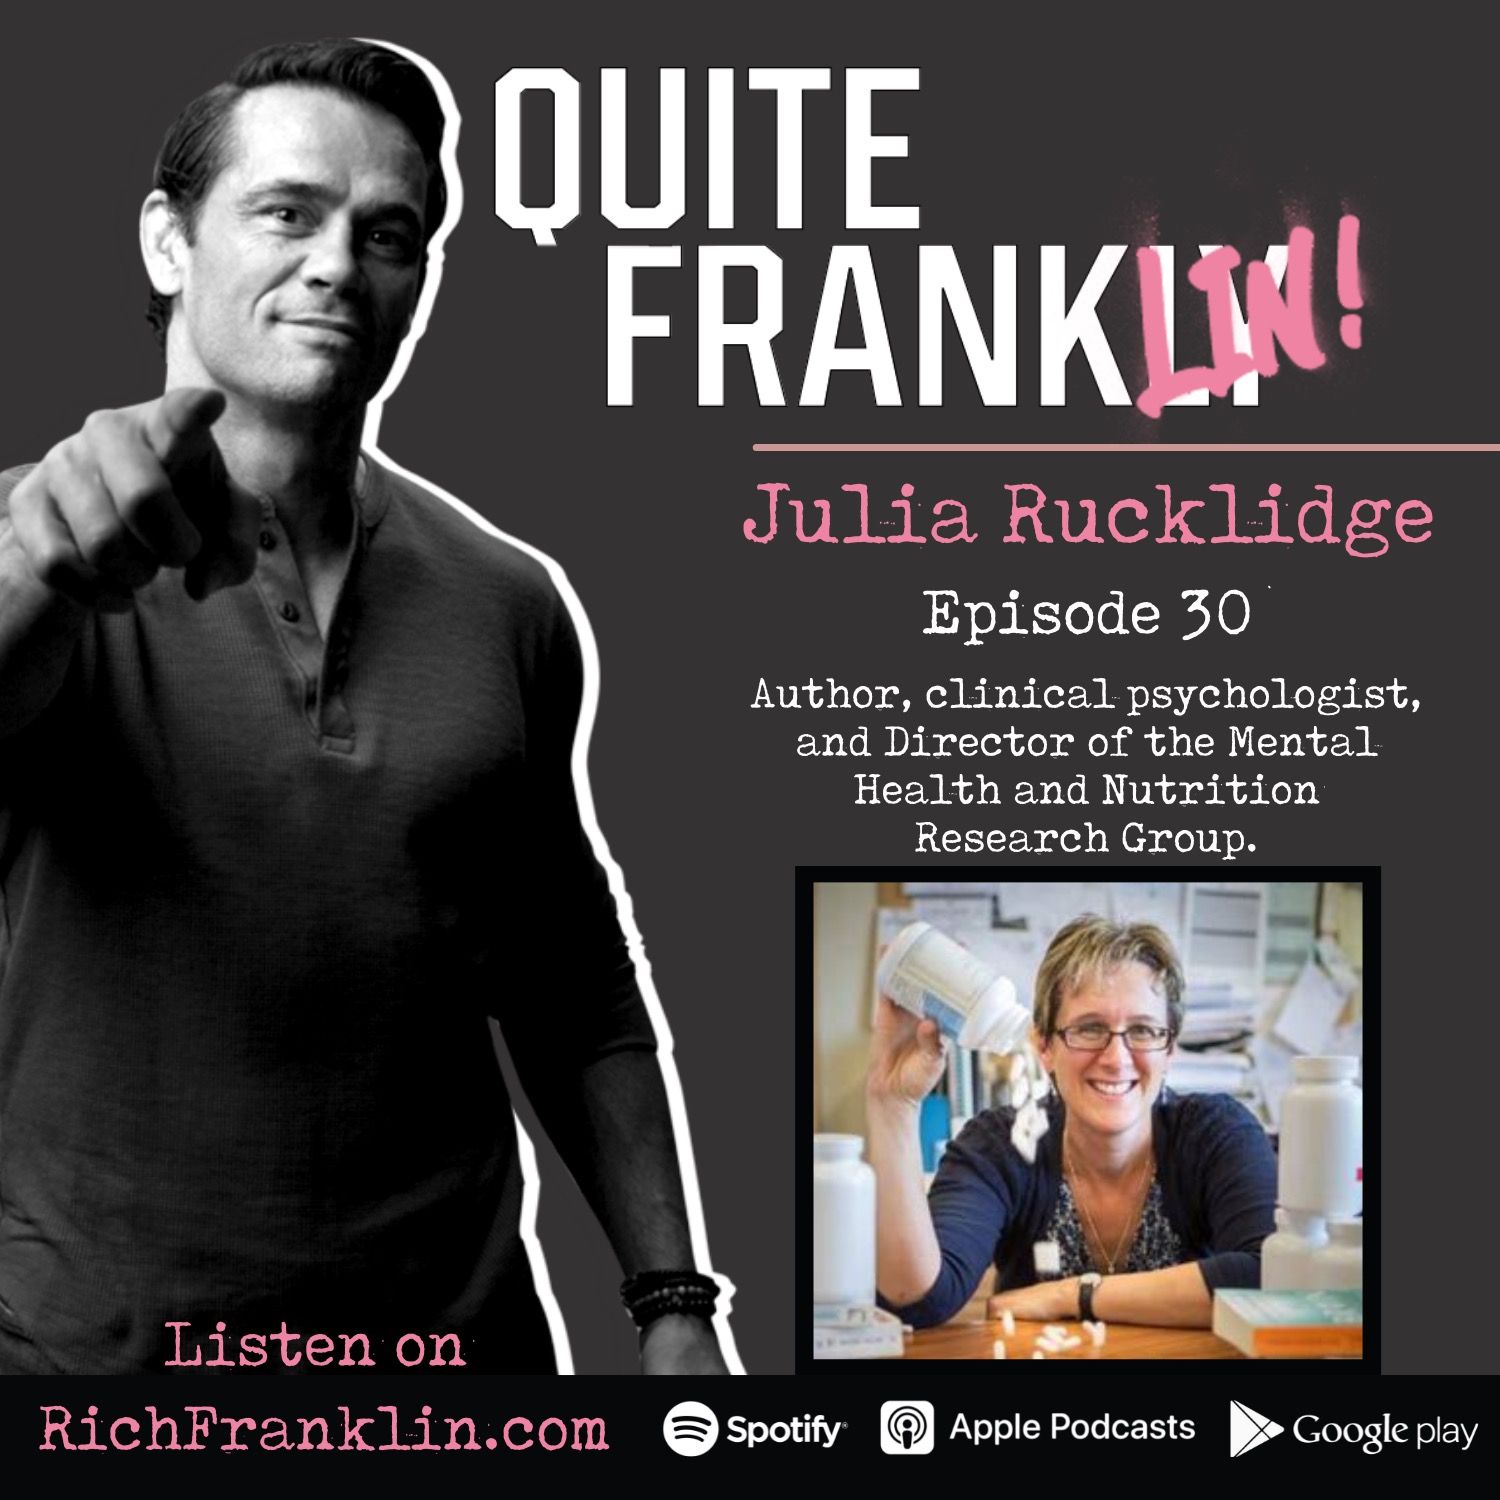 Dr Julia Rucklidge